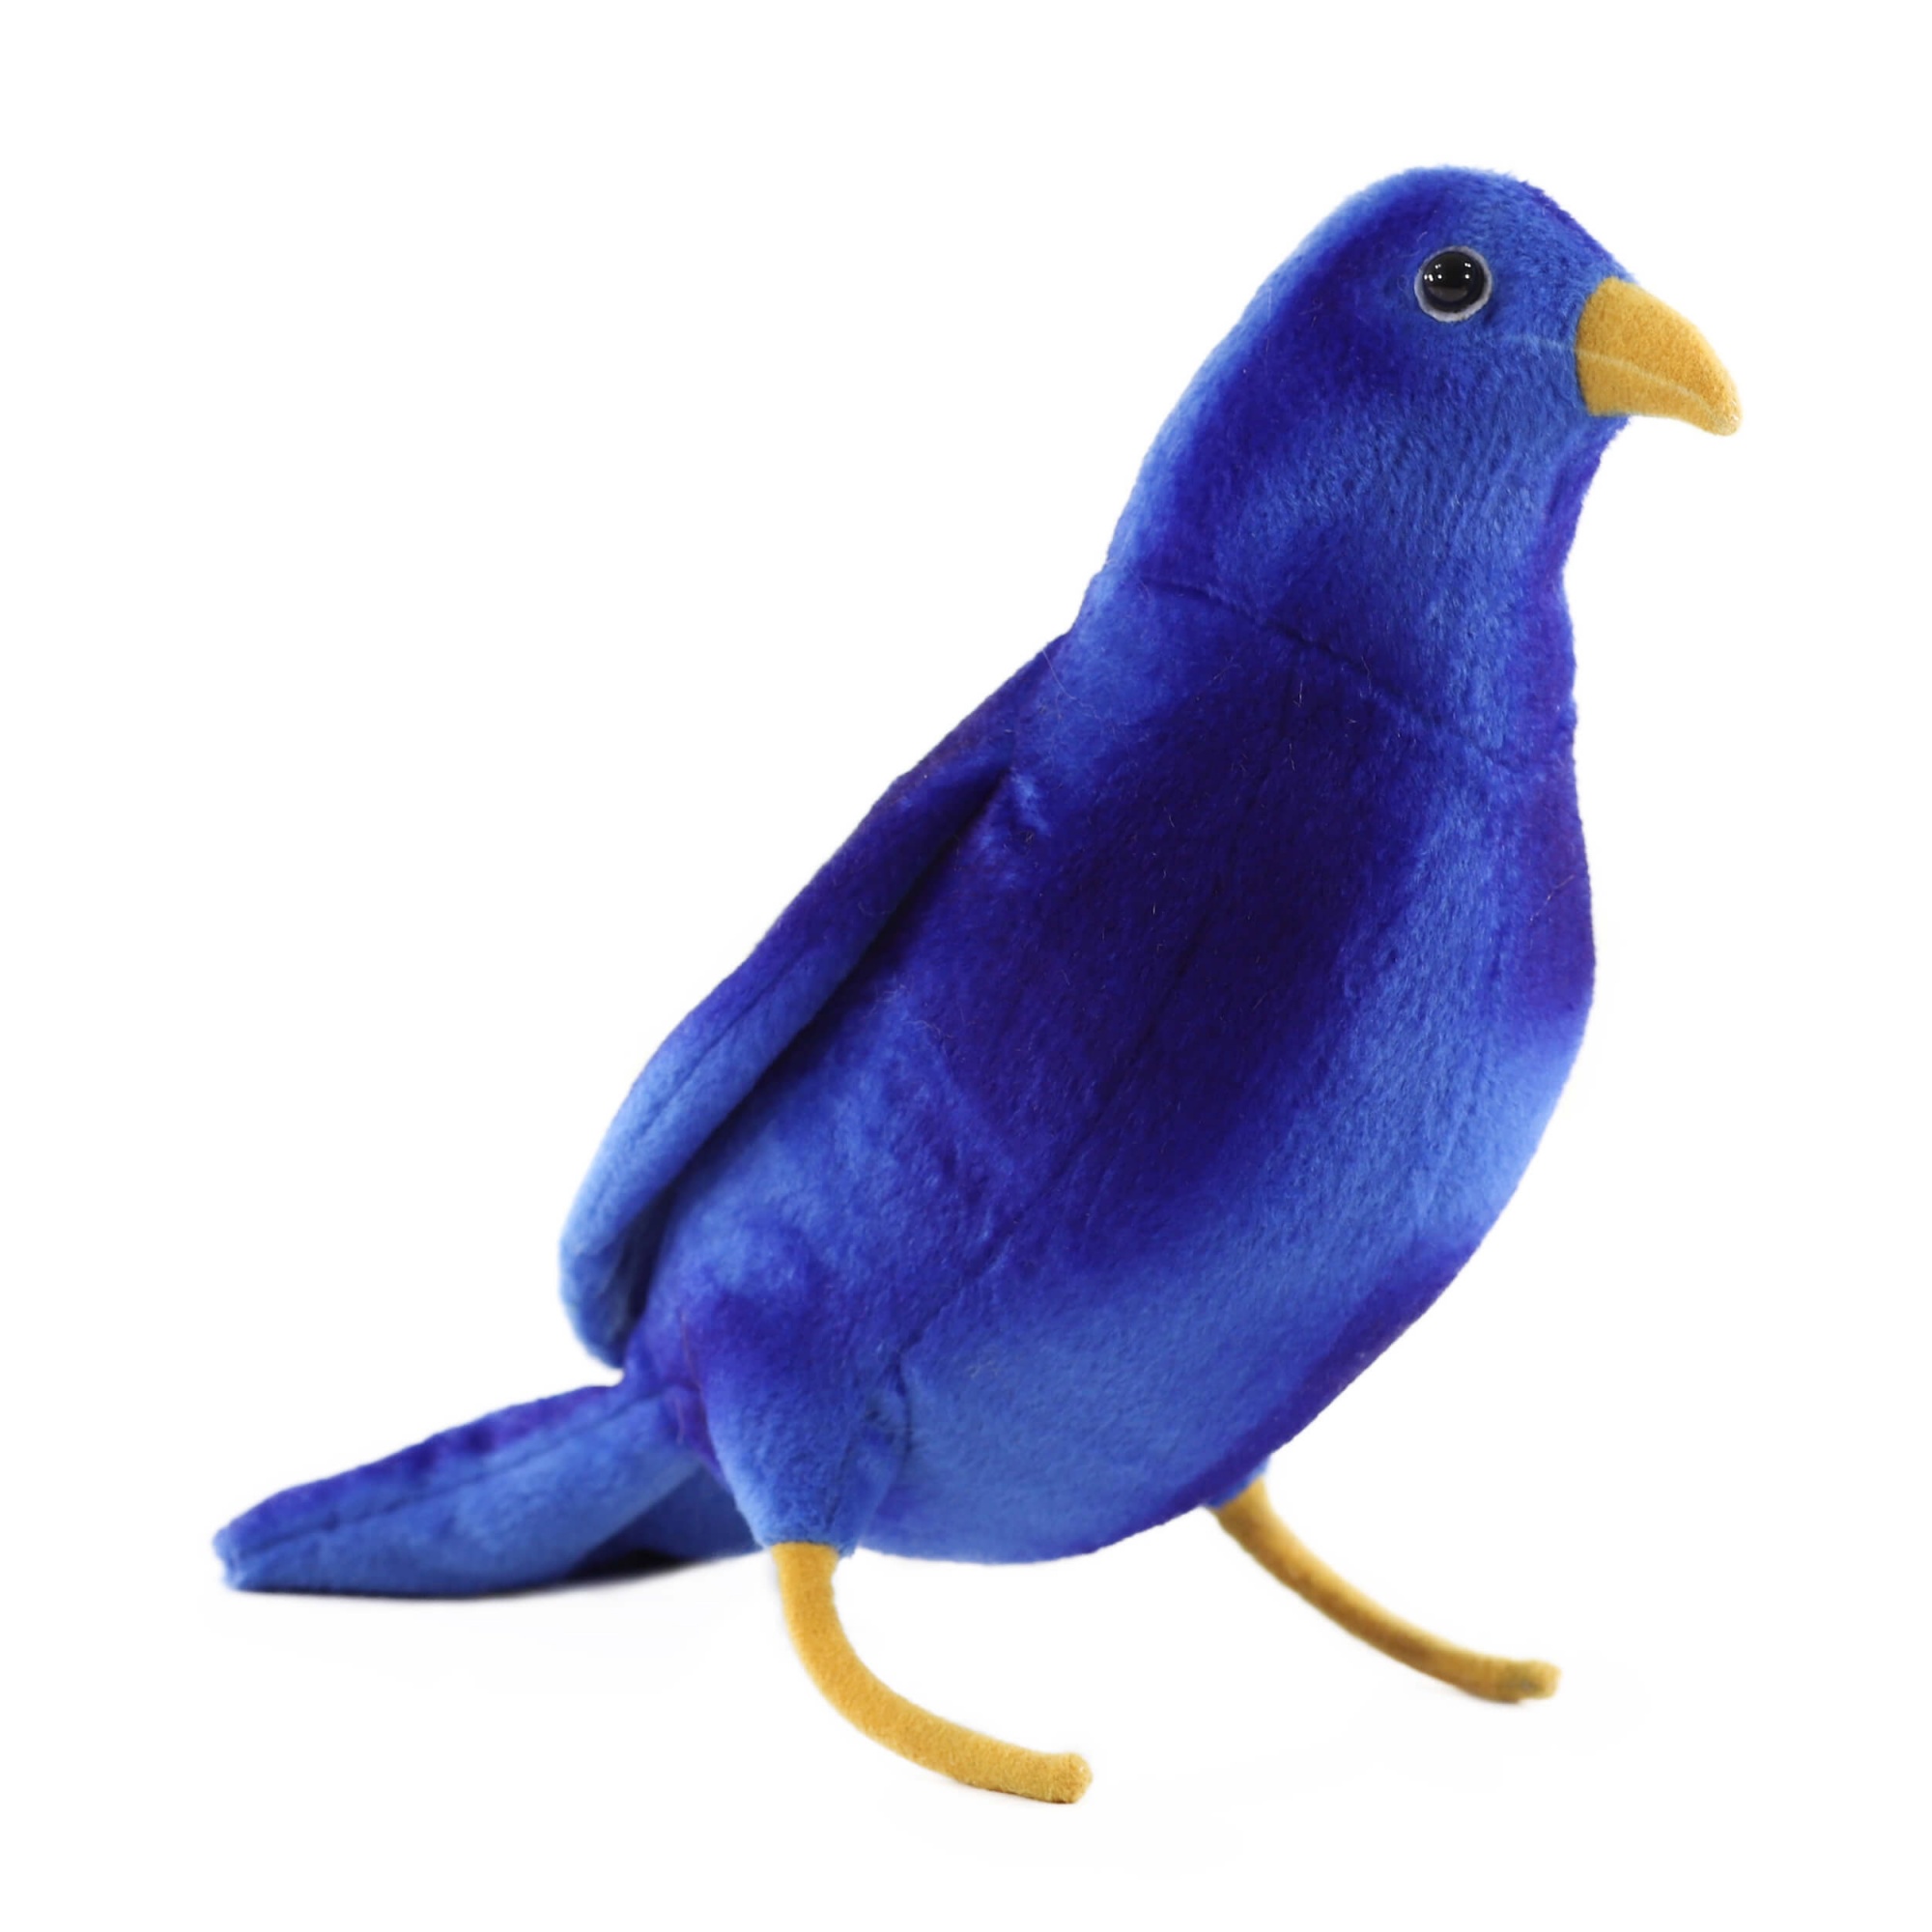 Toy bird. Hansa синяя птица, 23 см. Мягкие игрушки Hansa птицы. Мягкий игрушка Hansa птичка. Hansa Creation птица мягкая игрушка.